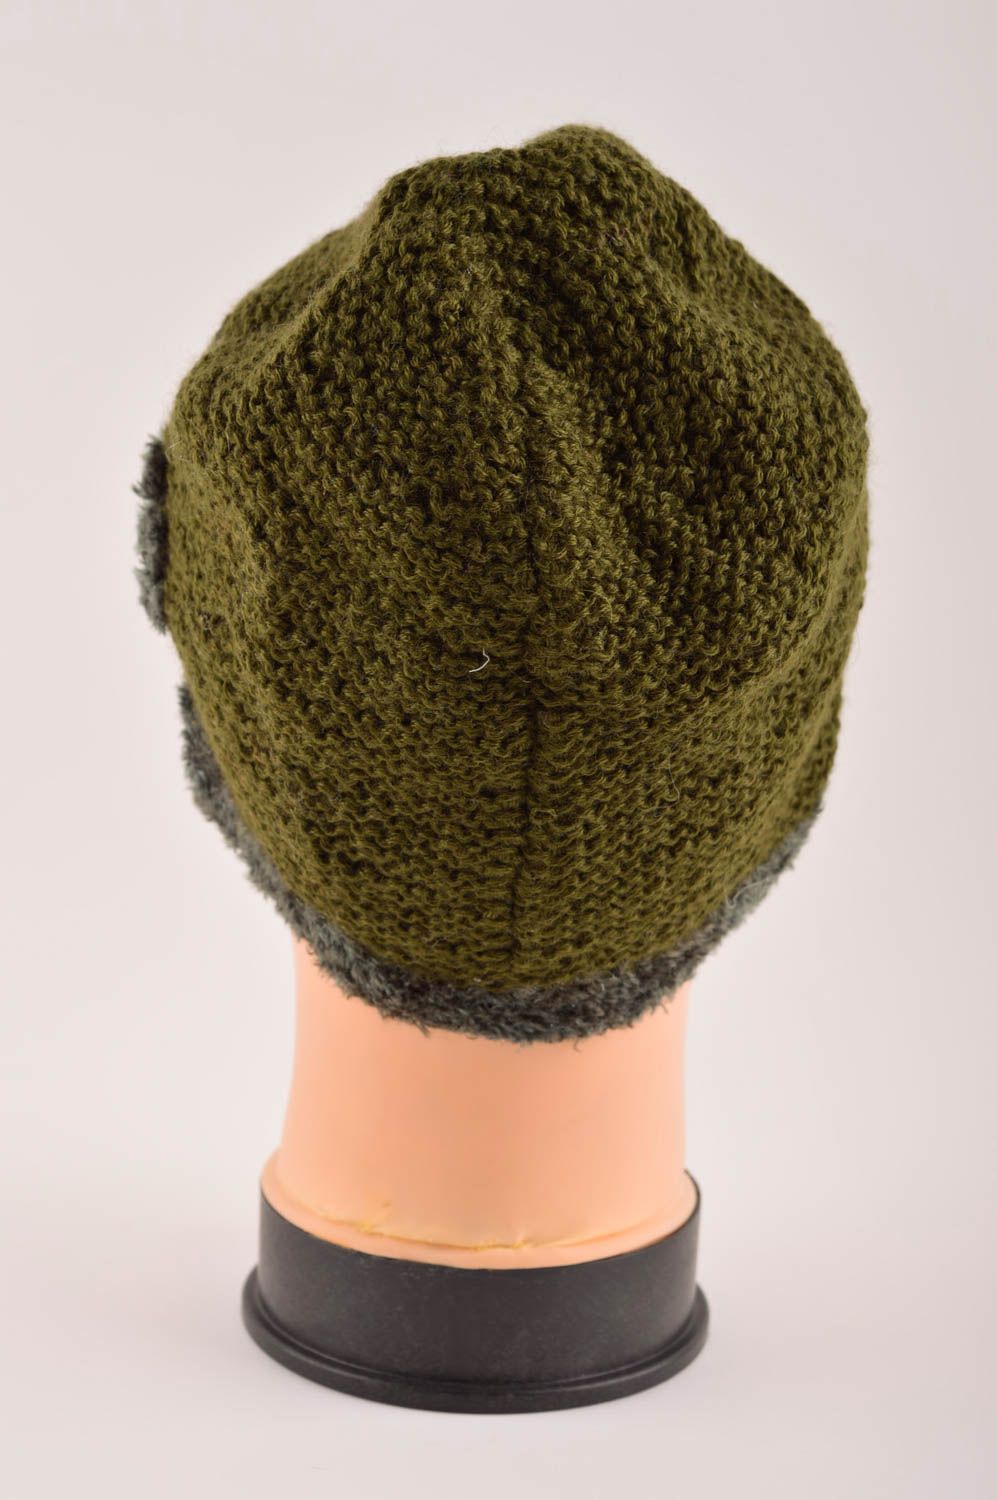 Вязаная шапка ручной работы шапка вязаная крючком зеленая зимняя шапка  фото 4